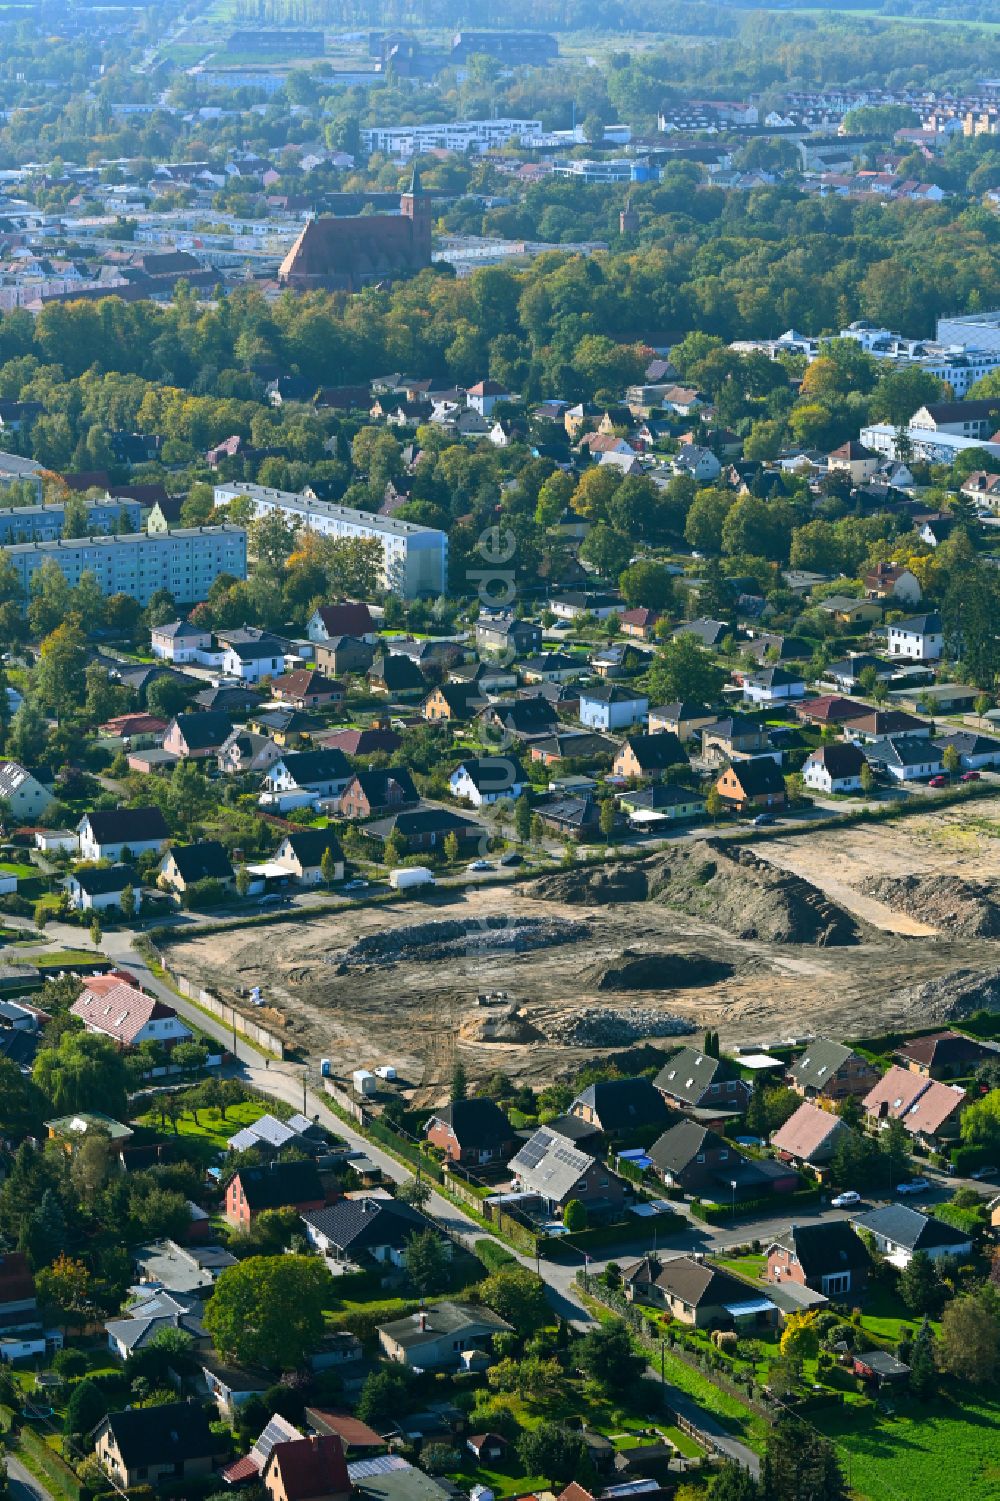 Luftbild Bernau - Baustelle Mischbebauung eines Wohngebiets mit Mehrfamilienhäusern und Einfamilienhäusern Rutenfeld in Bernau im Bundesland Brandenburg, Deutschland